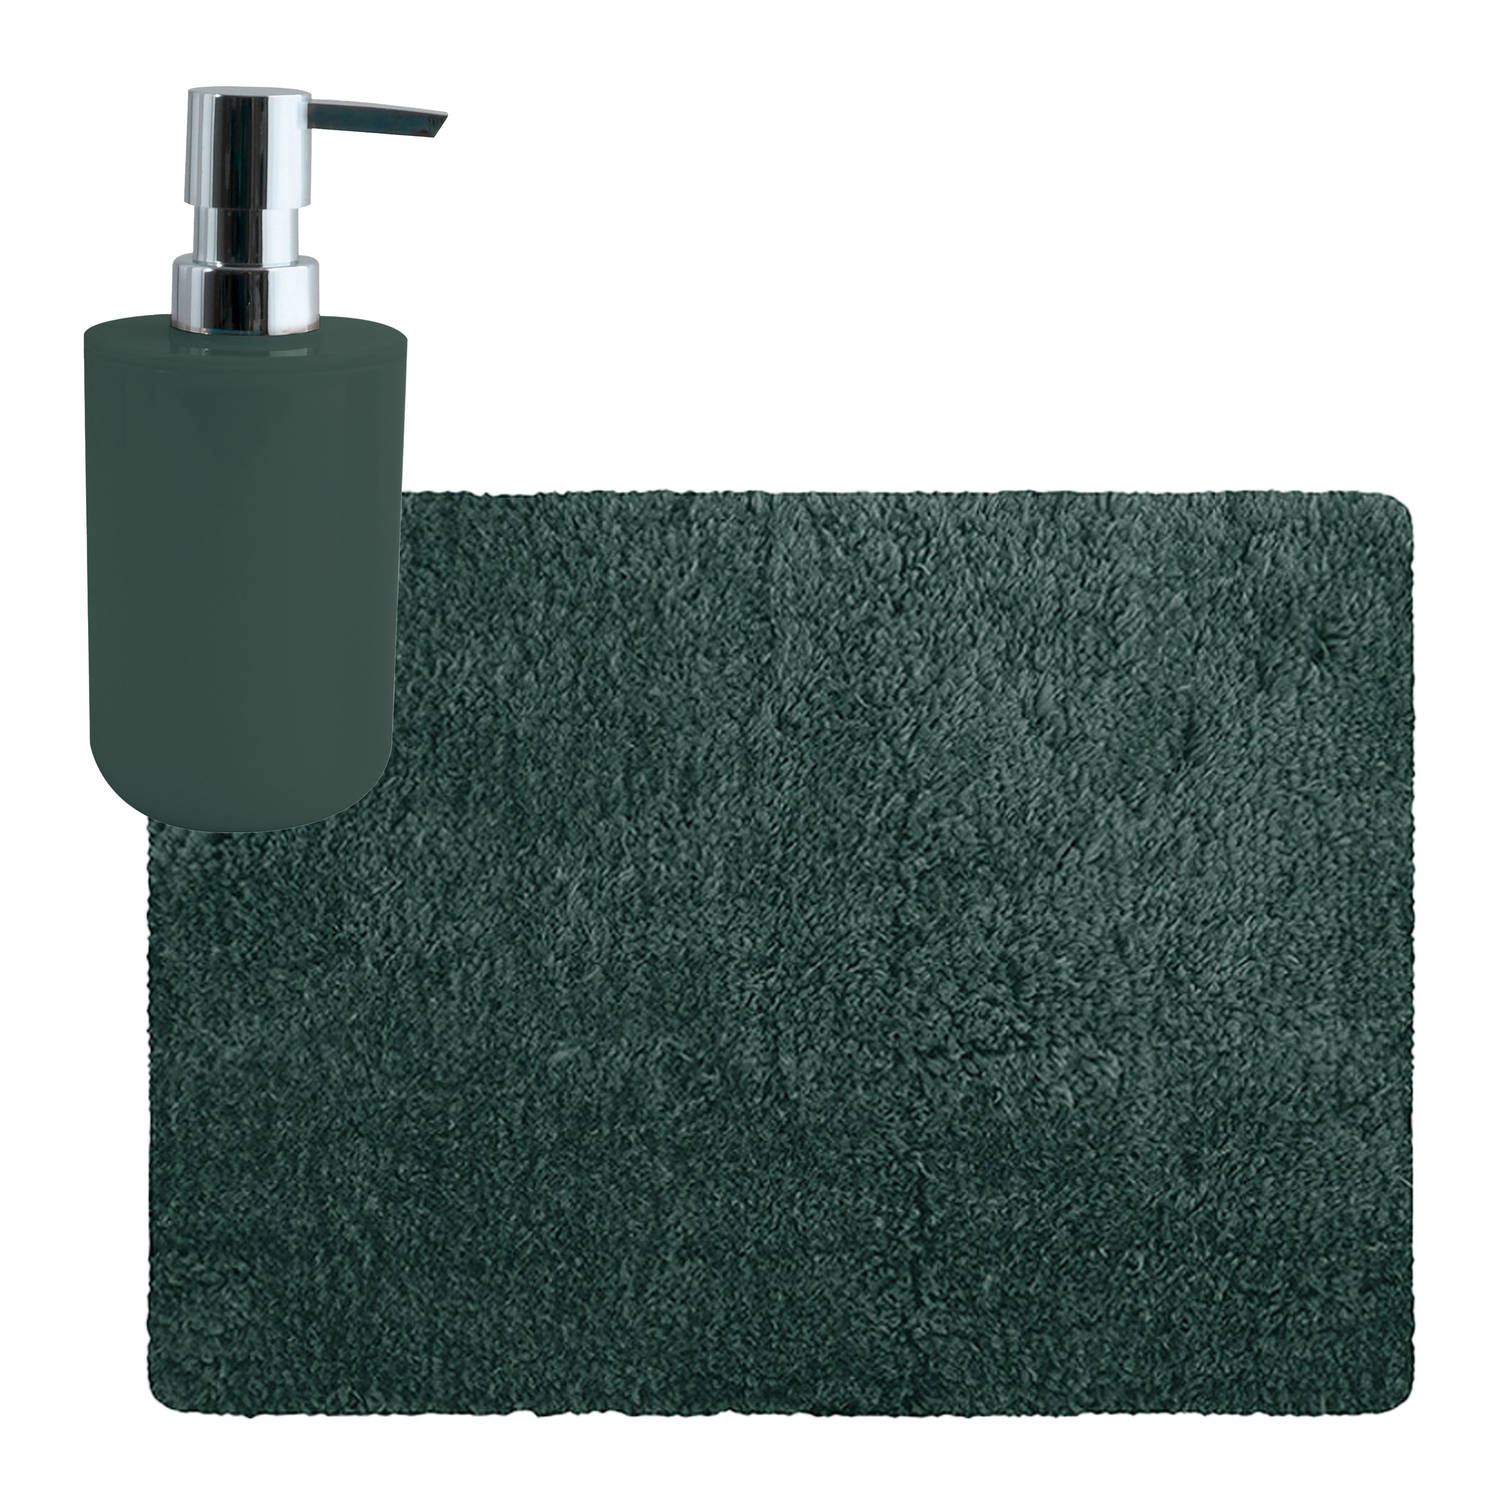 MSV badkamer droogloop tapijt Langharig 50 x 70 cm incl zeeppompje zelfde kleur donkergroen Badmatje